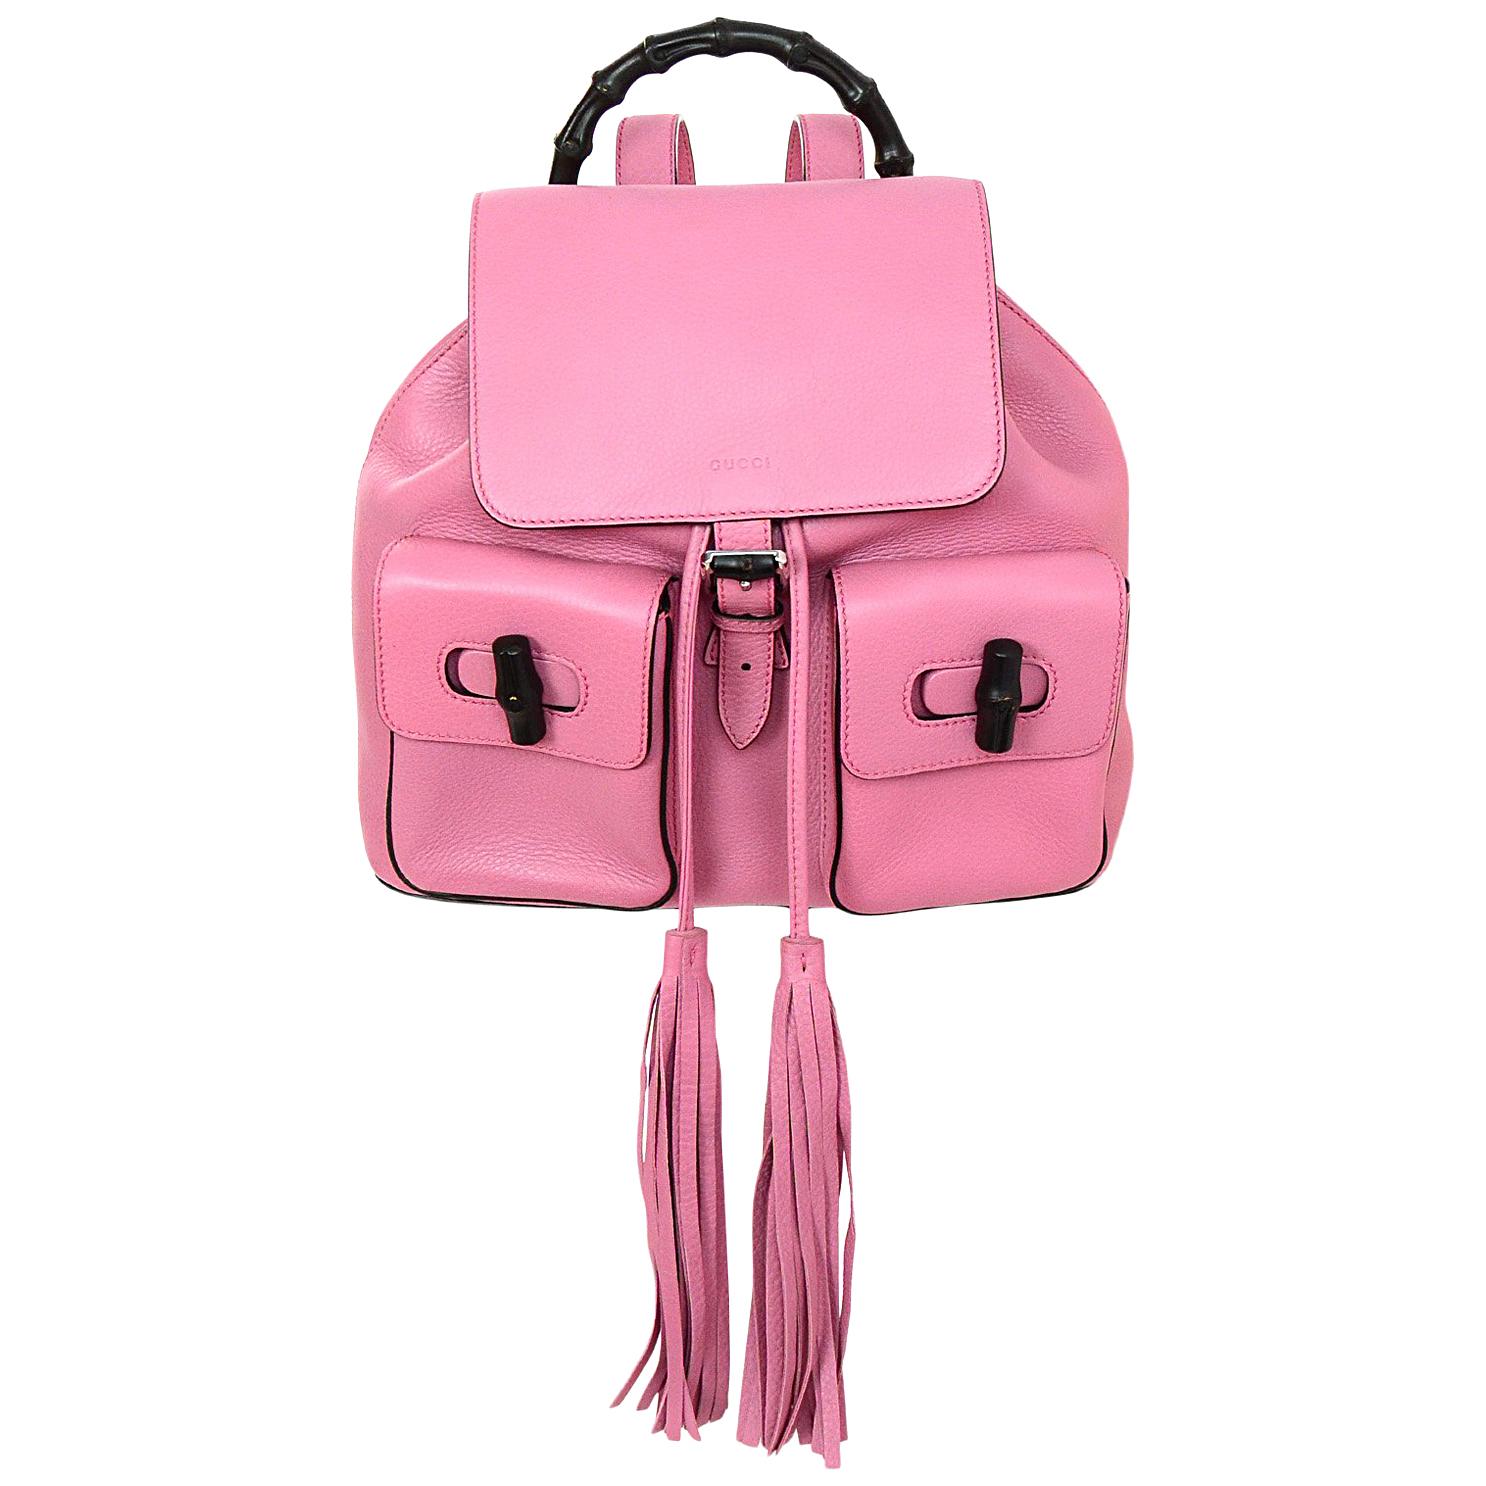  Gucci Glossy Pink Medium Bamboo Backpack Bag rt. $2, 590